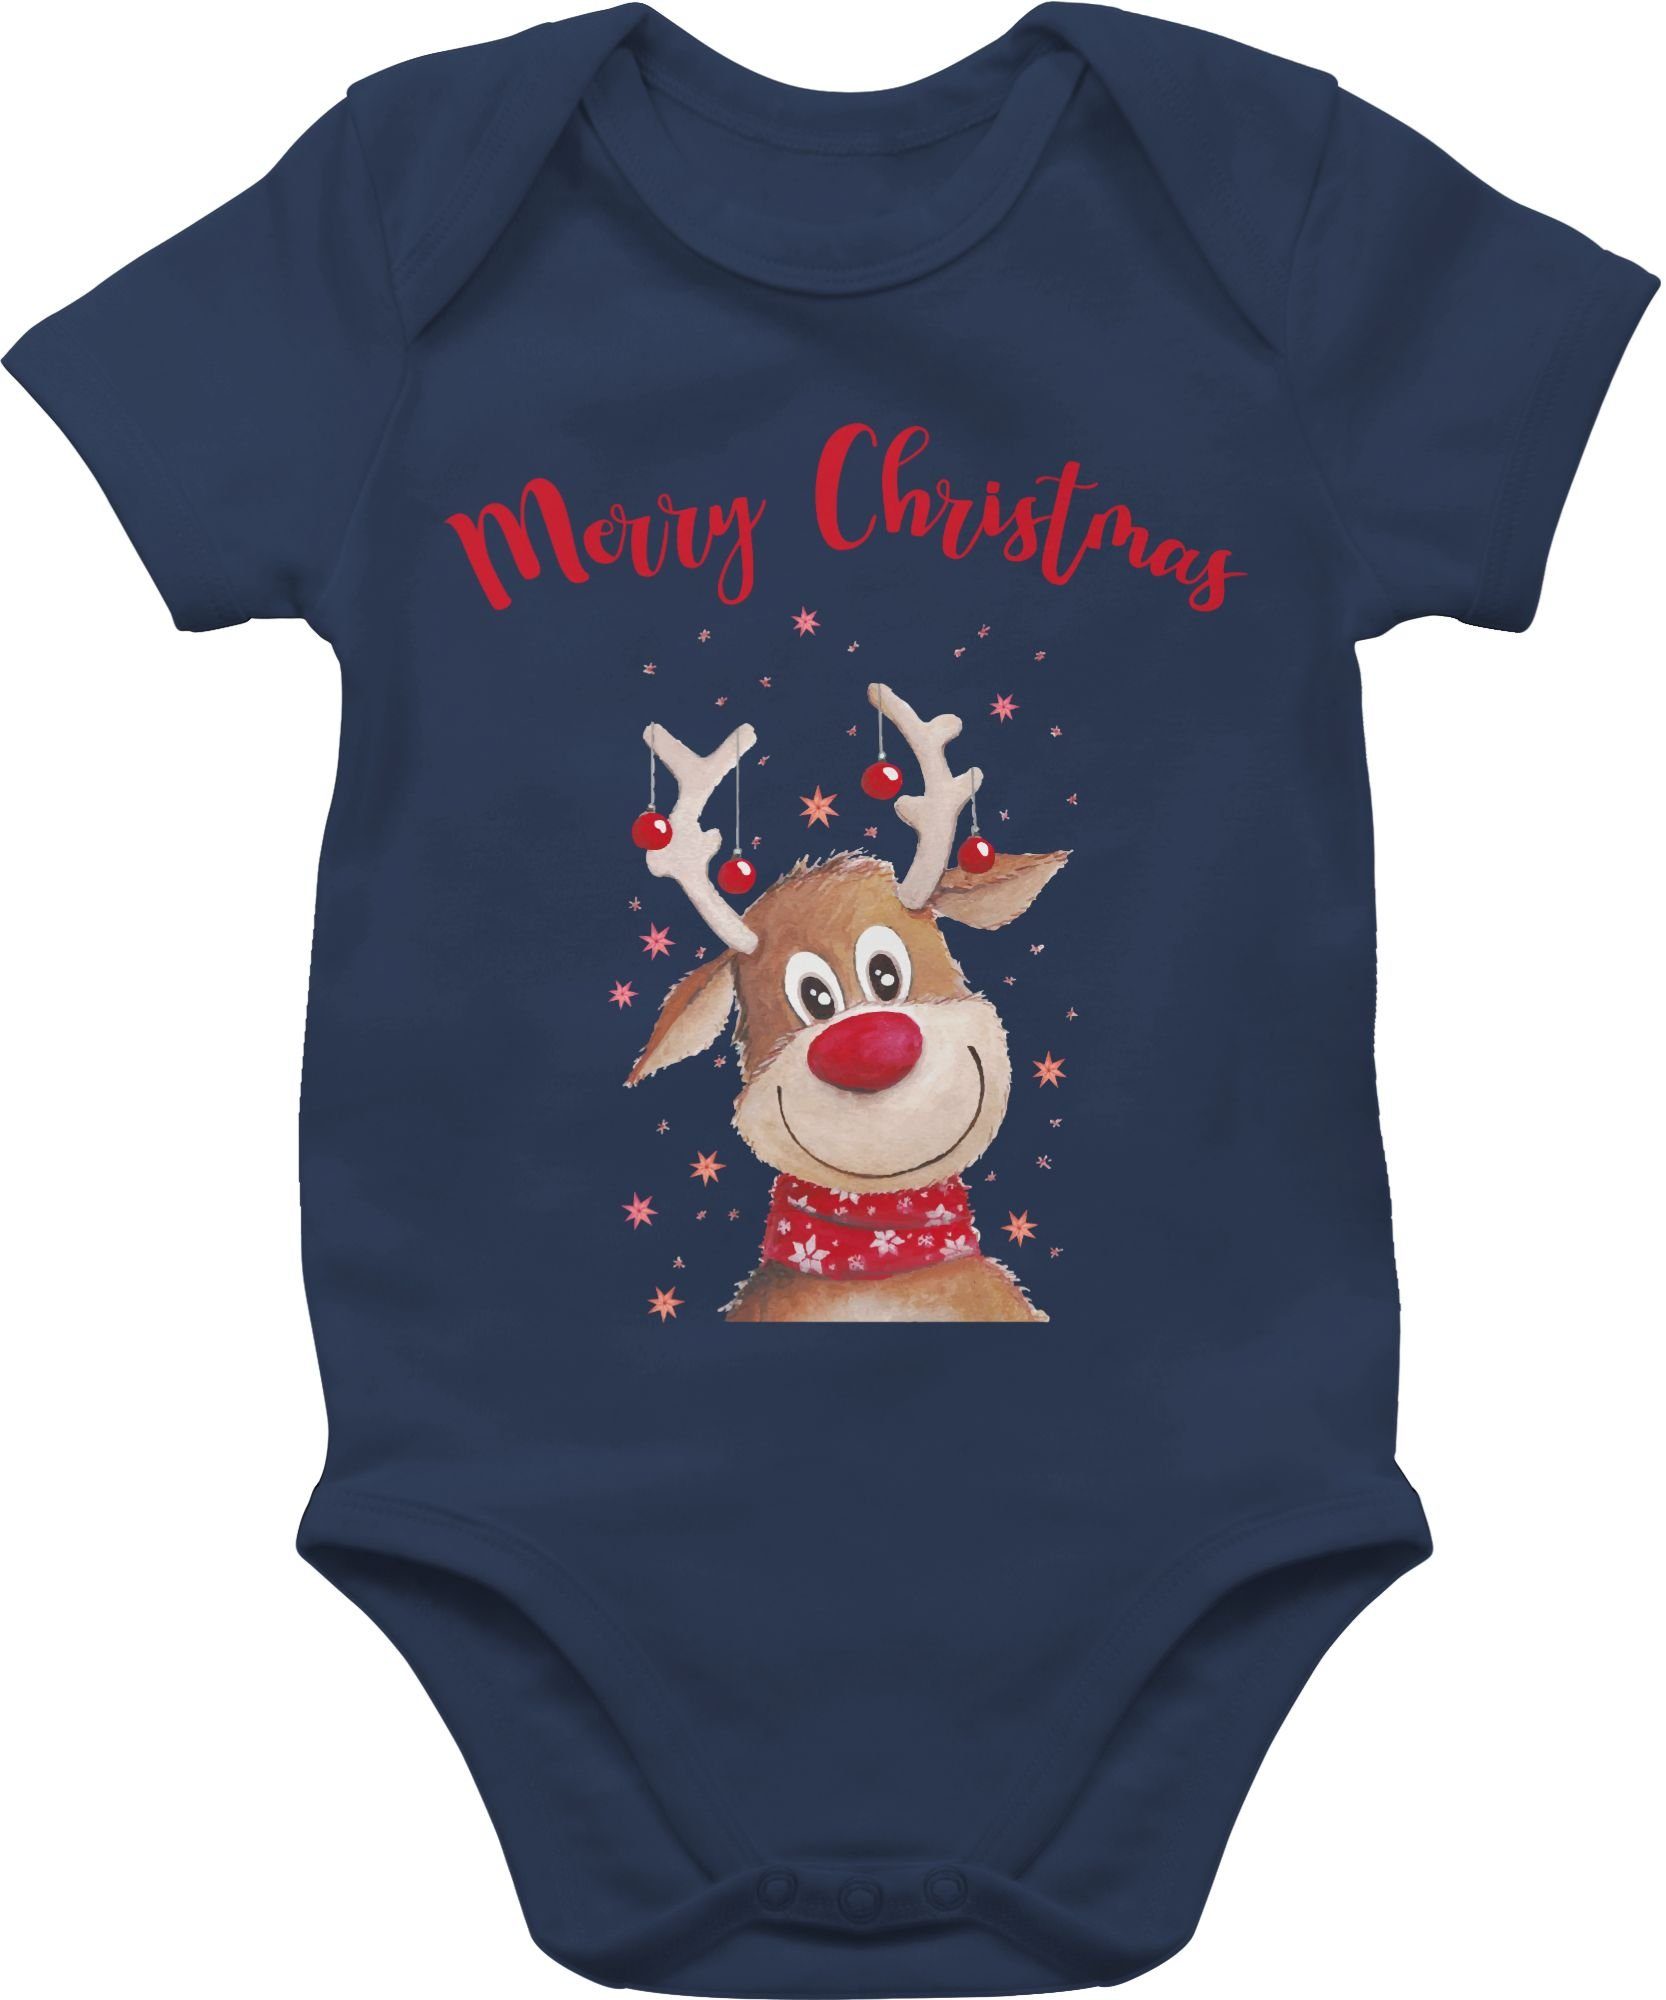 Shirtracer Shirtbody Navy Blau Merry Christmas Baby mit Sternen Rentier Weihnachten 3 Kleidung Aquarell